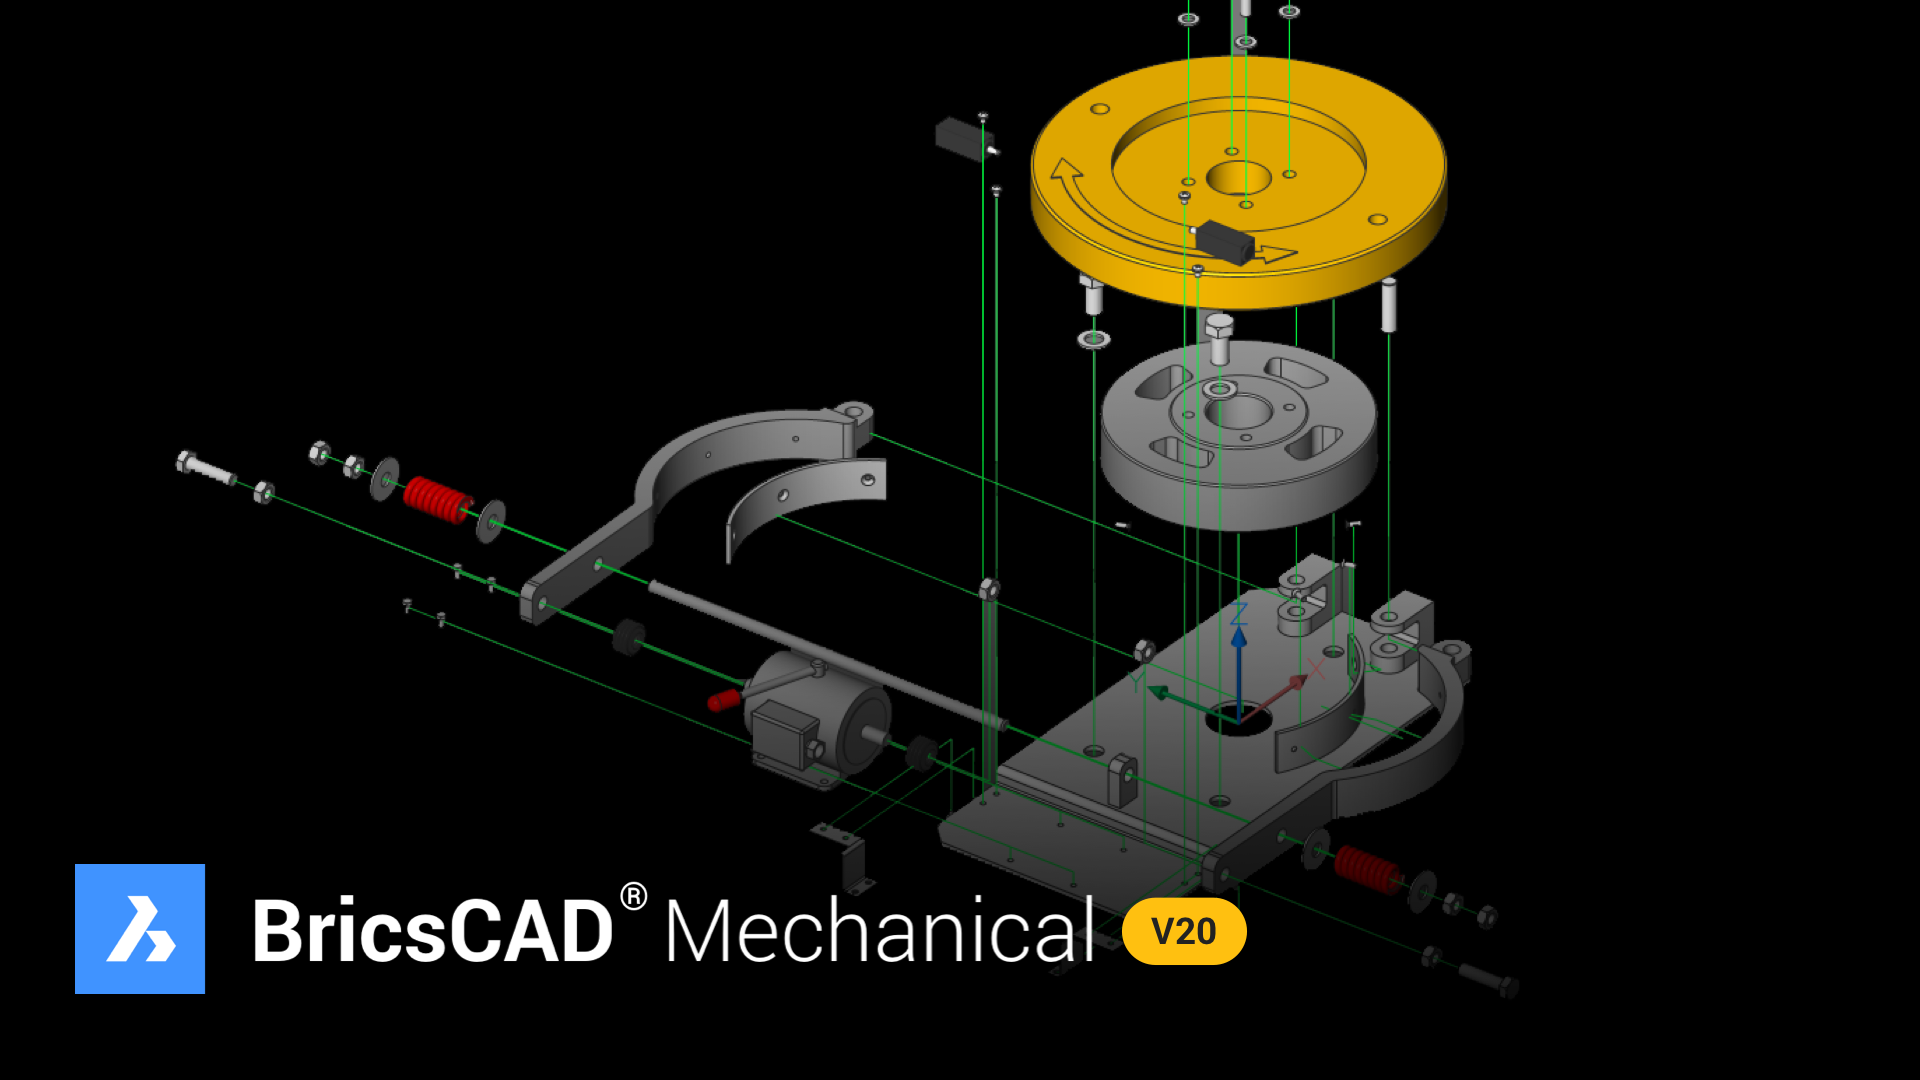 BricsCAD mechanical v20 image